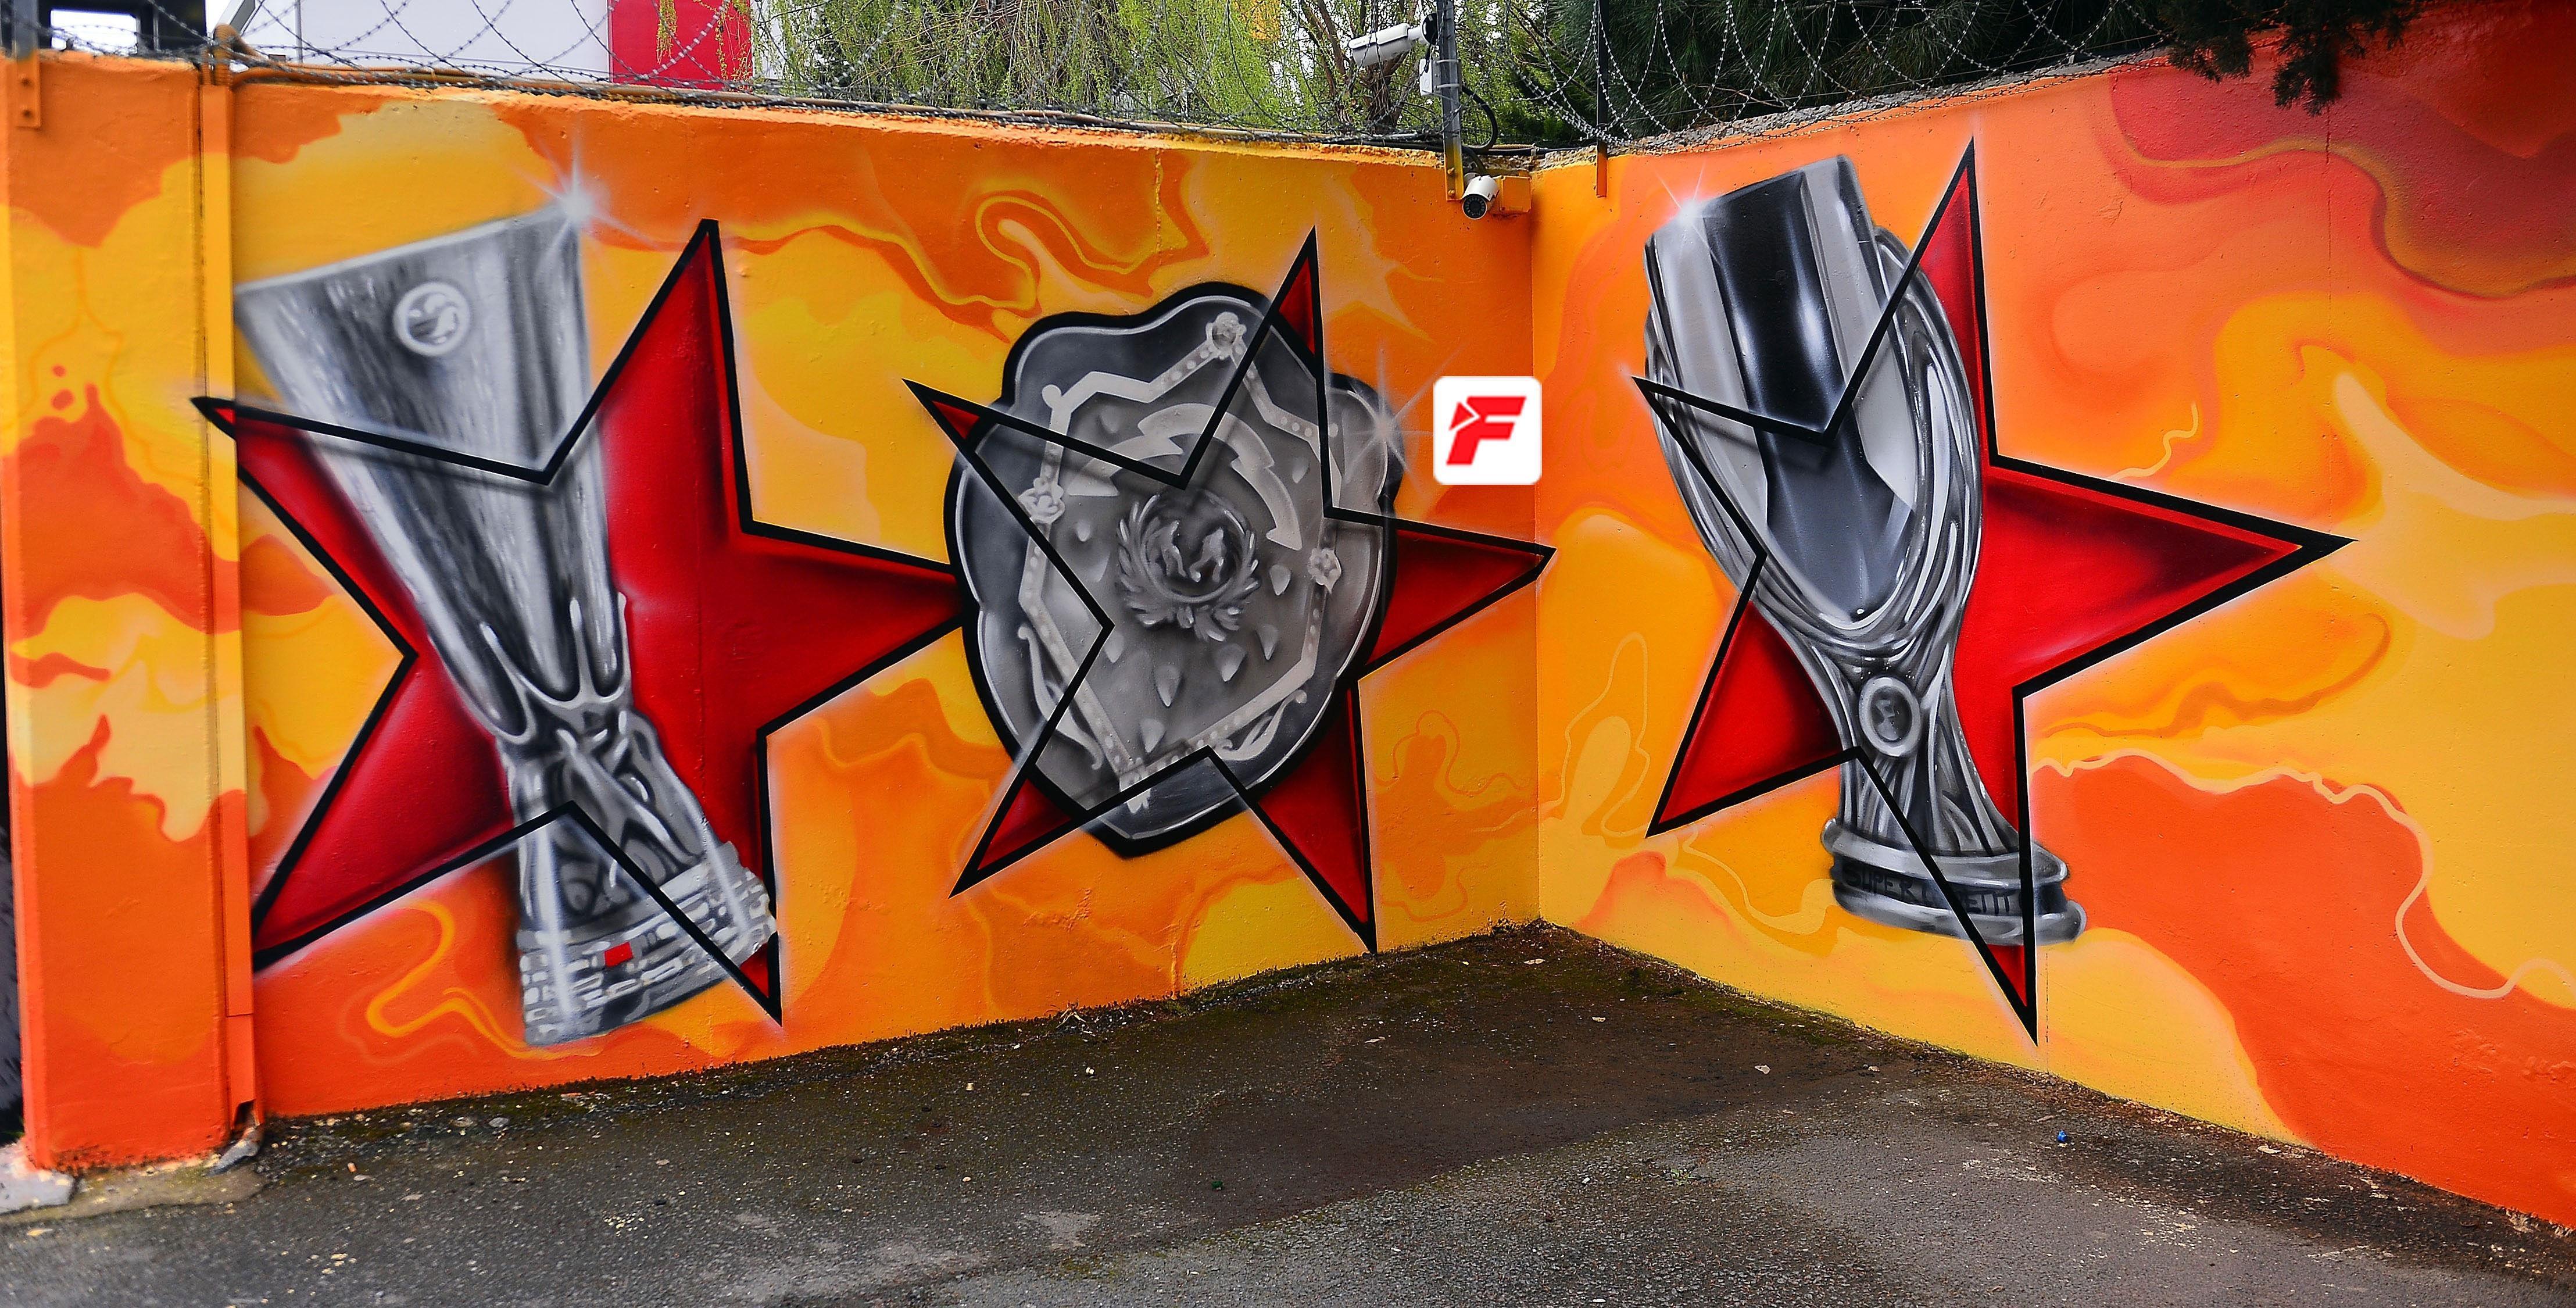 Florya Metin Oktay Tesisleri, grafitilerle süslendi